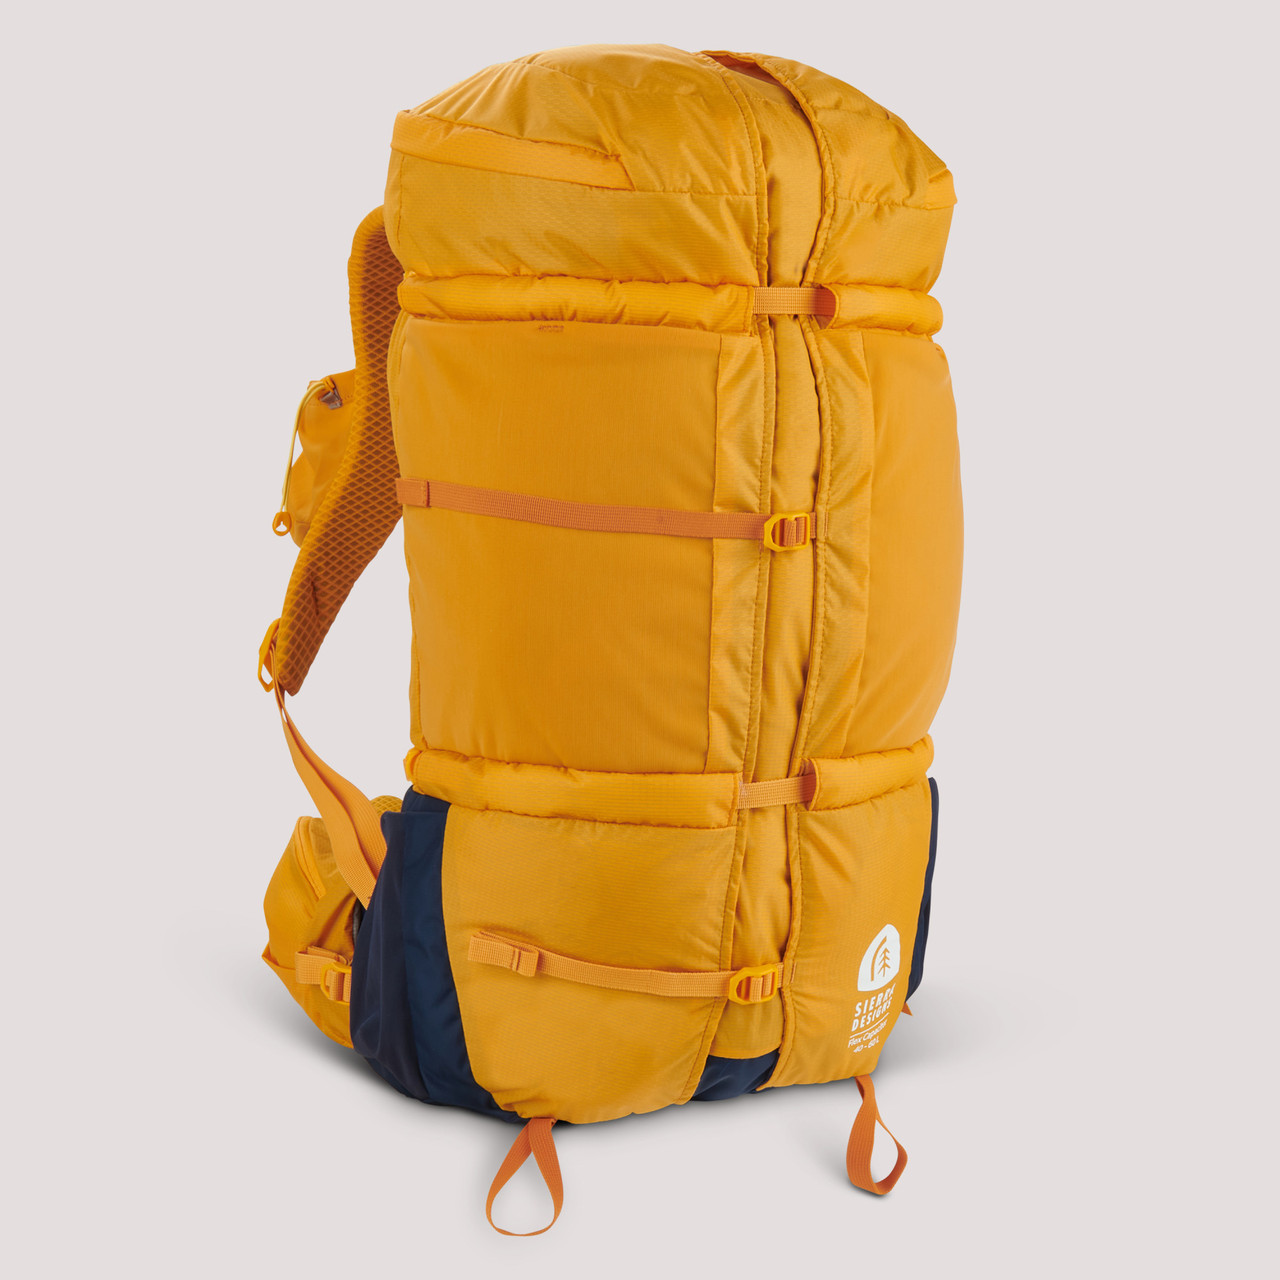 Sierra Designs Flex Capacitor 40-60 backpack, side view